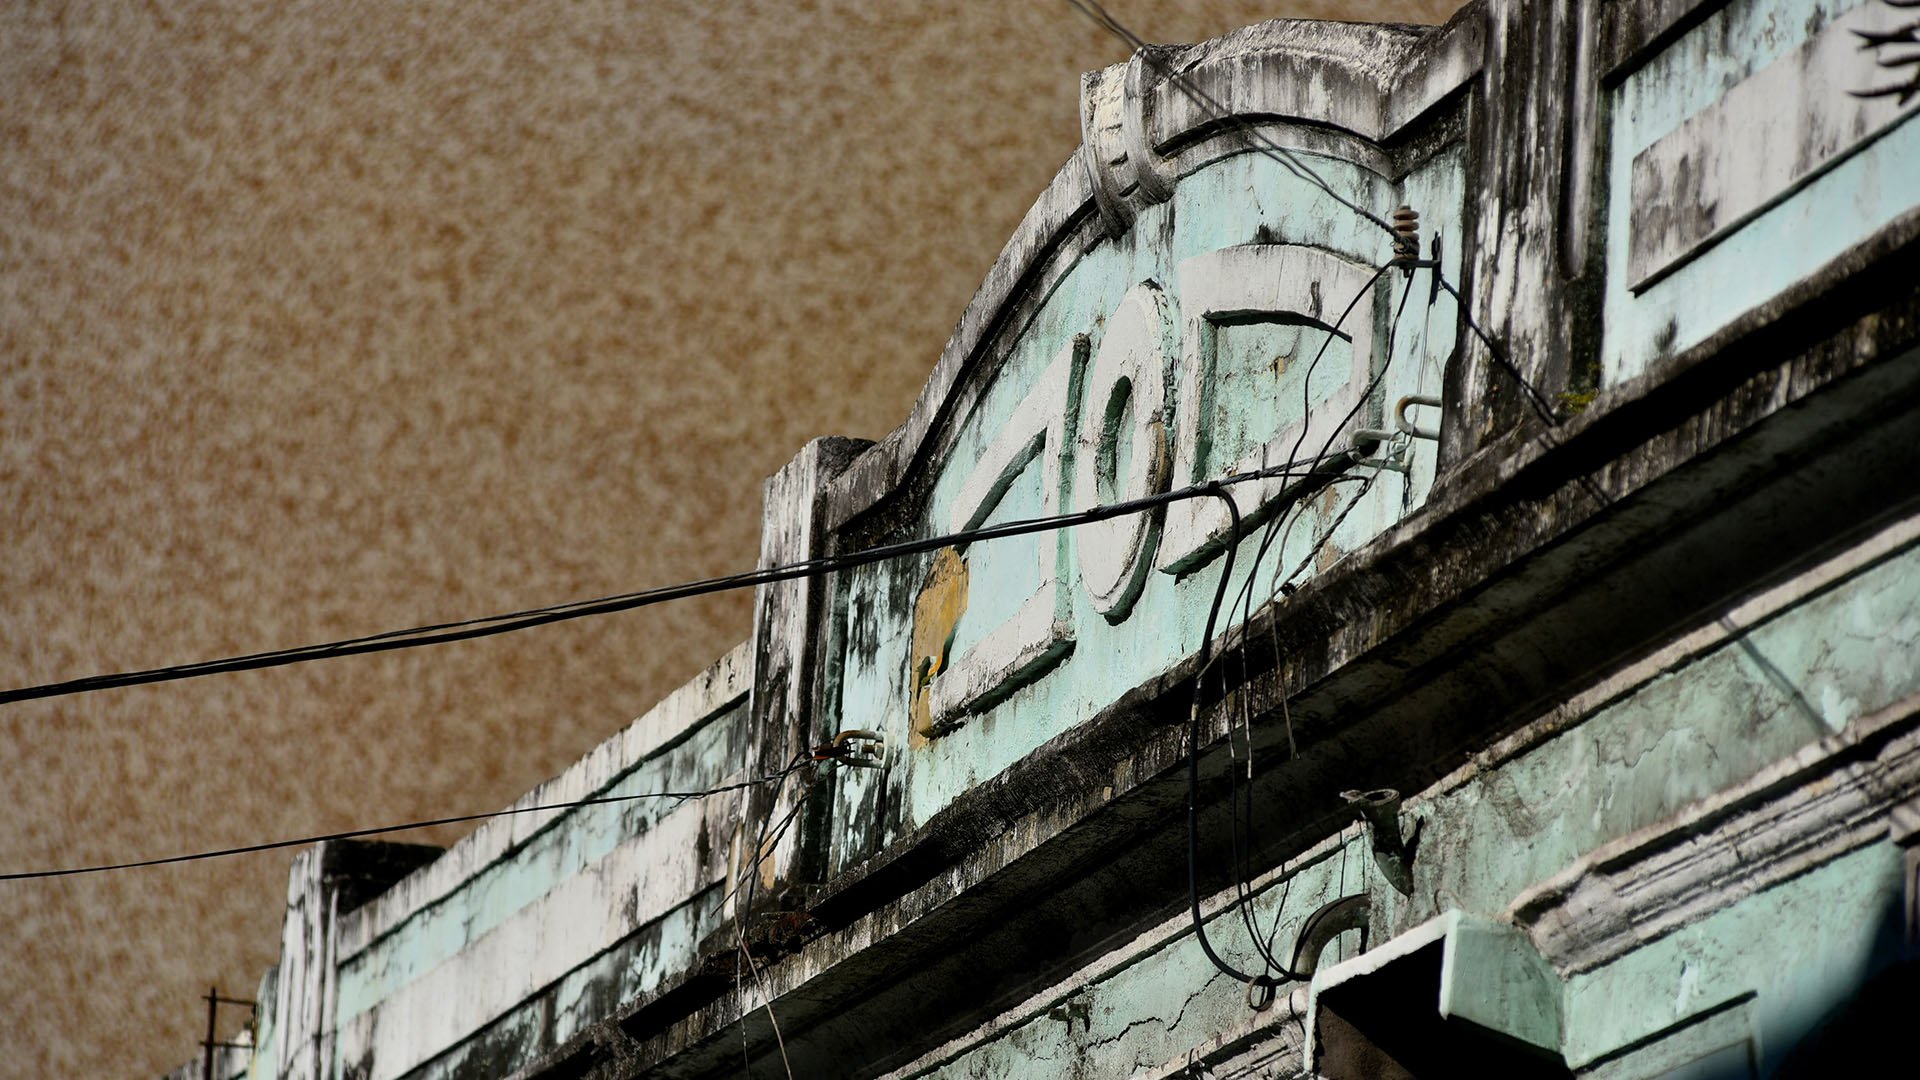 História Abandonada - Ensaio fotográfico com foco nos detalhes da arquitetura de época, ação do tempo e o descaso com alguns prédios no Centro Histórico de Vitória